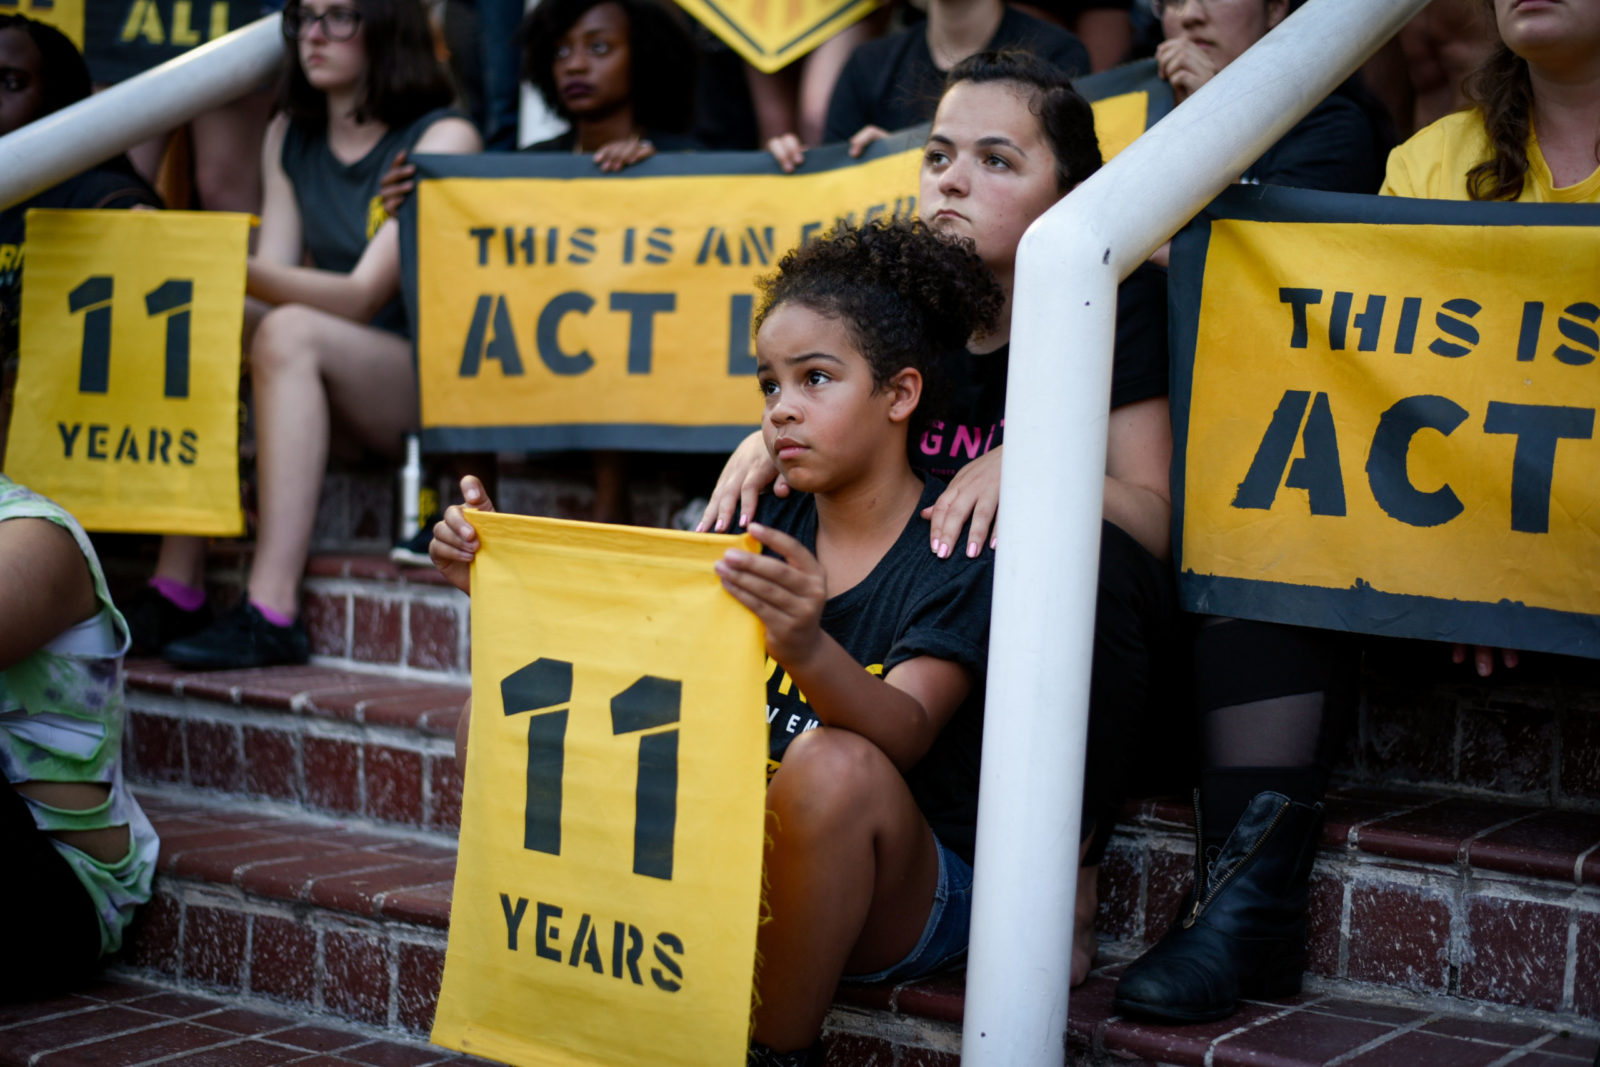 Een jonge Sunrise-activist zit op de trappen van het DNC-hoofdkwartier in DC, met een bordje "11 jaar". Ze wordt omringd door mede-activisten.